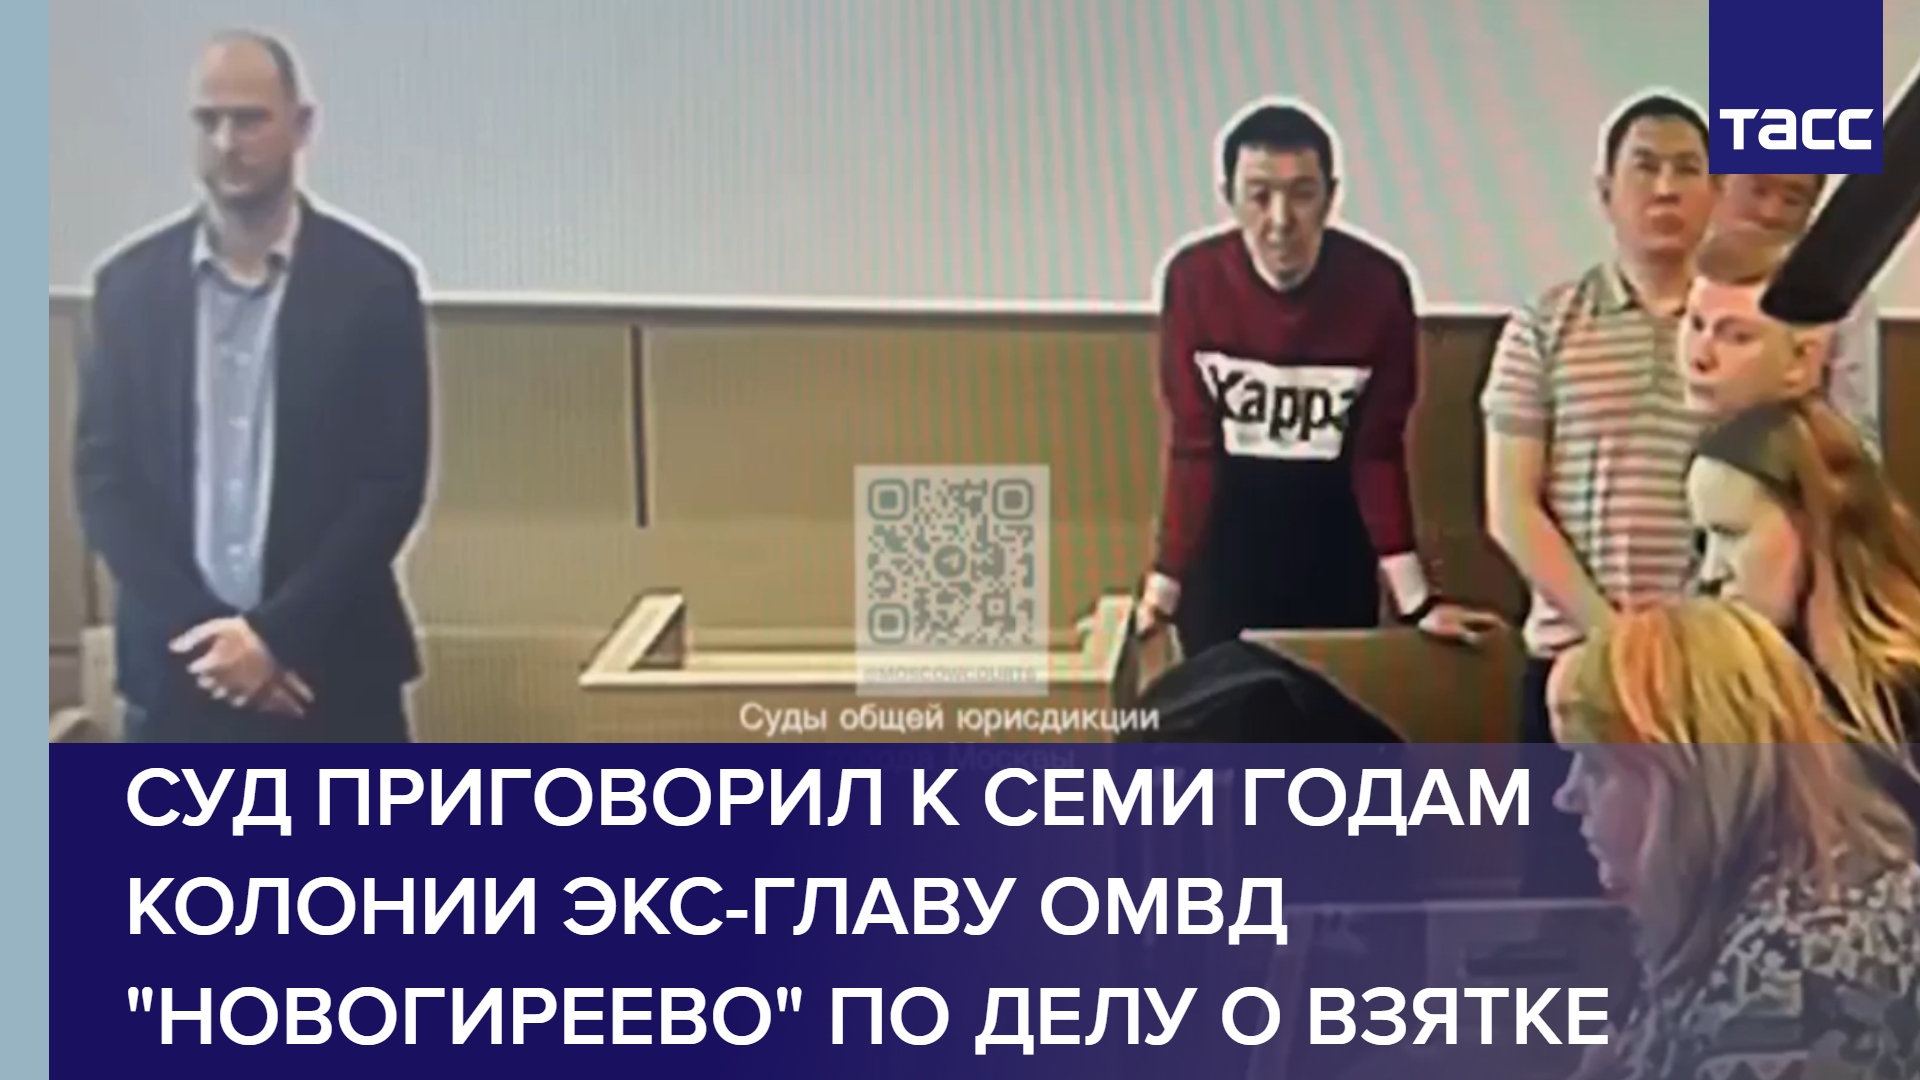 Суд приговорил к семи годам колонии экс-главу ОМВД "Новогиреево" по делу о взятке